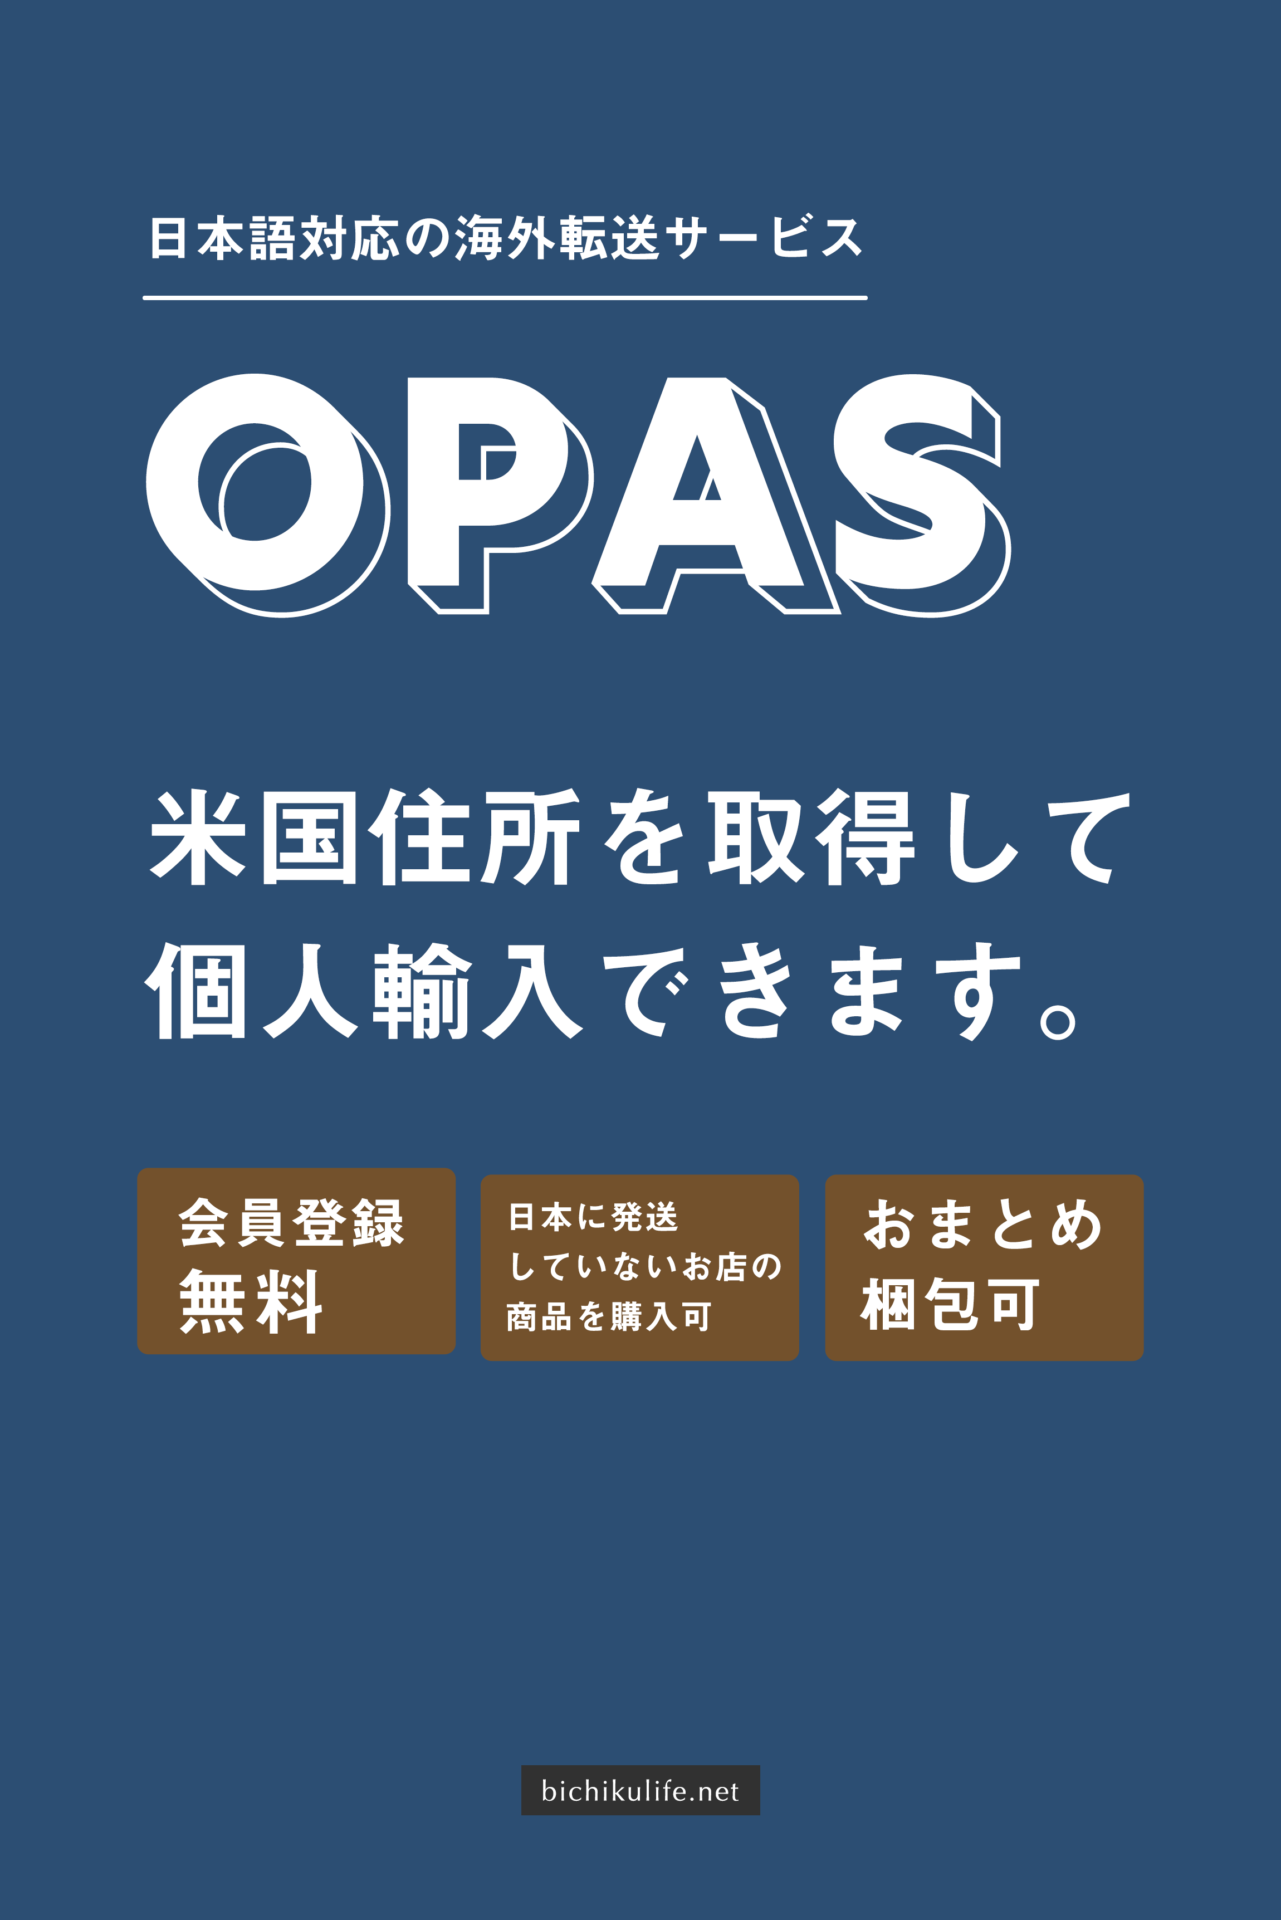 OPAS（オパス）海外からの転送サービスの使い方